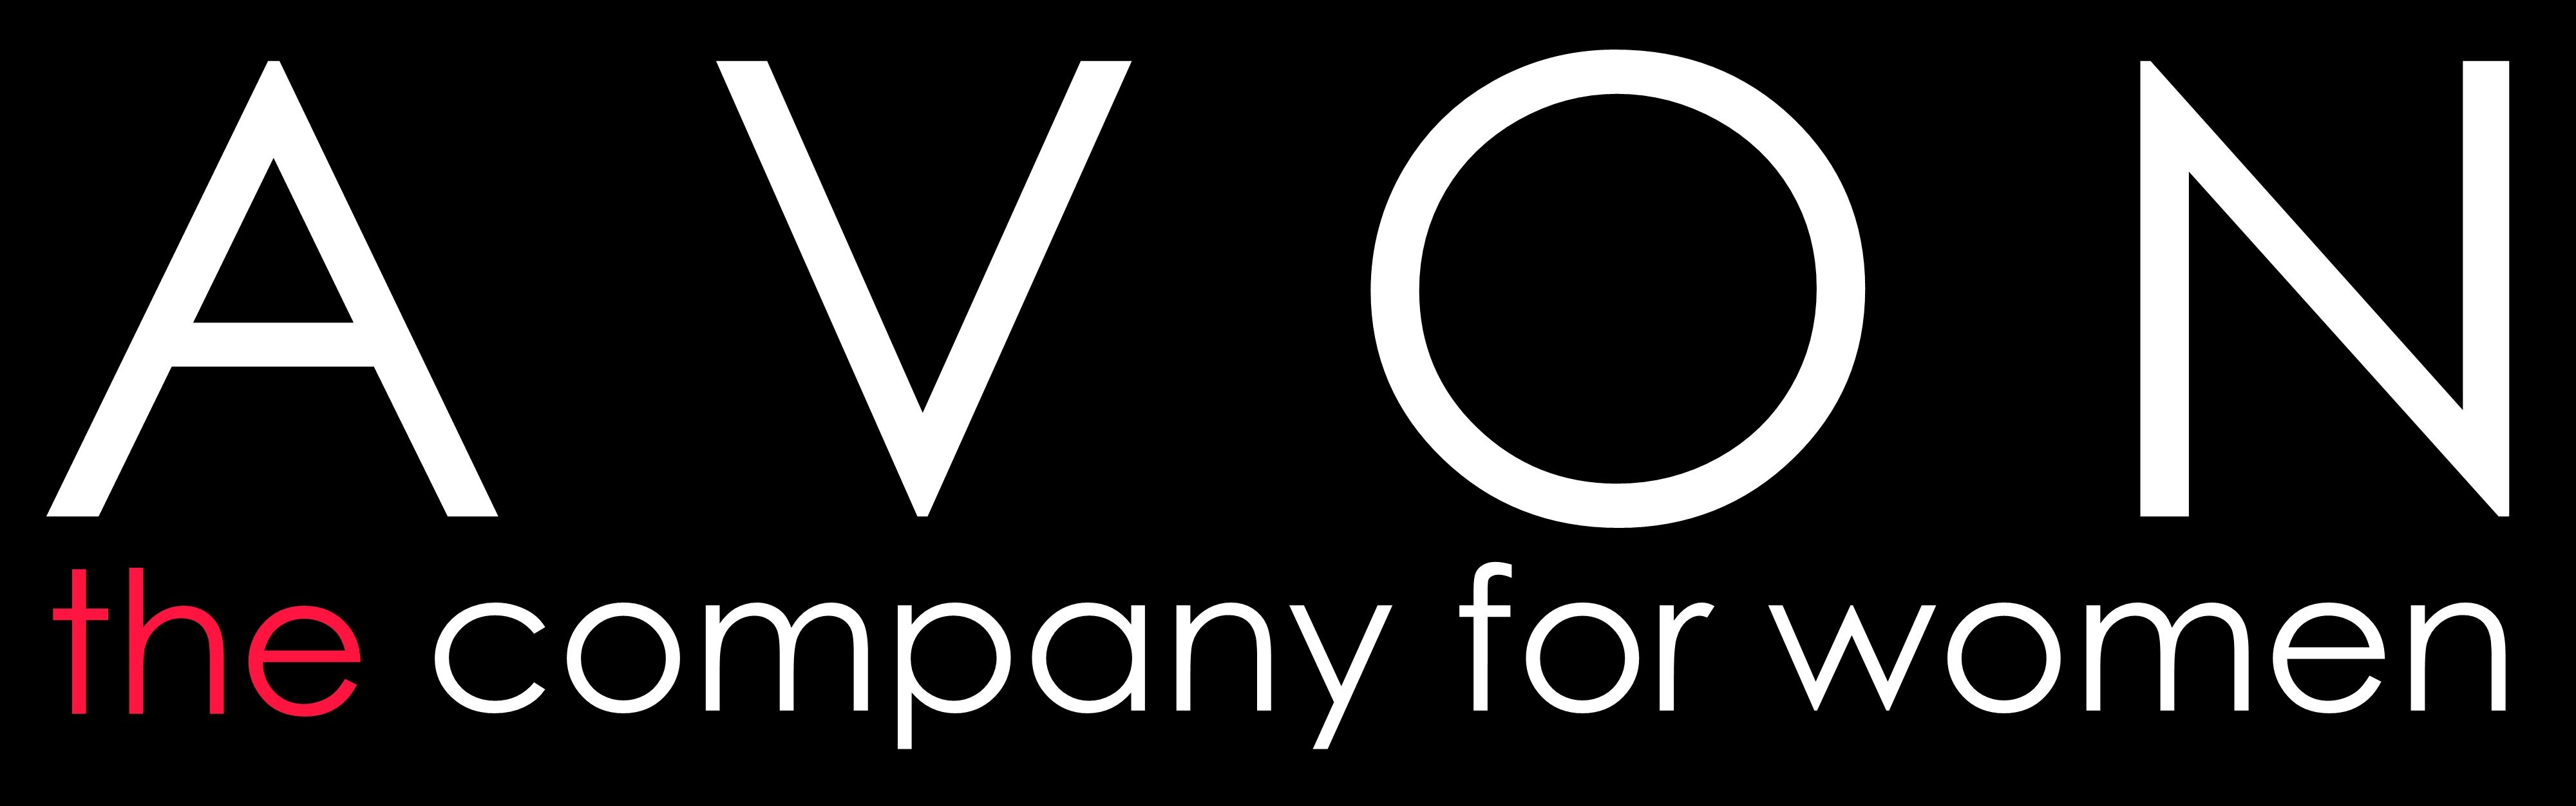 Avon Logos